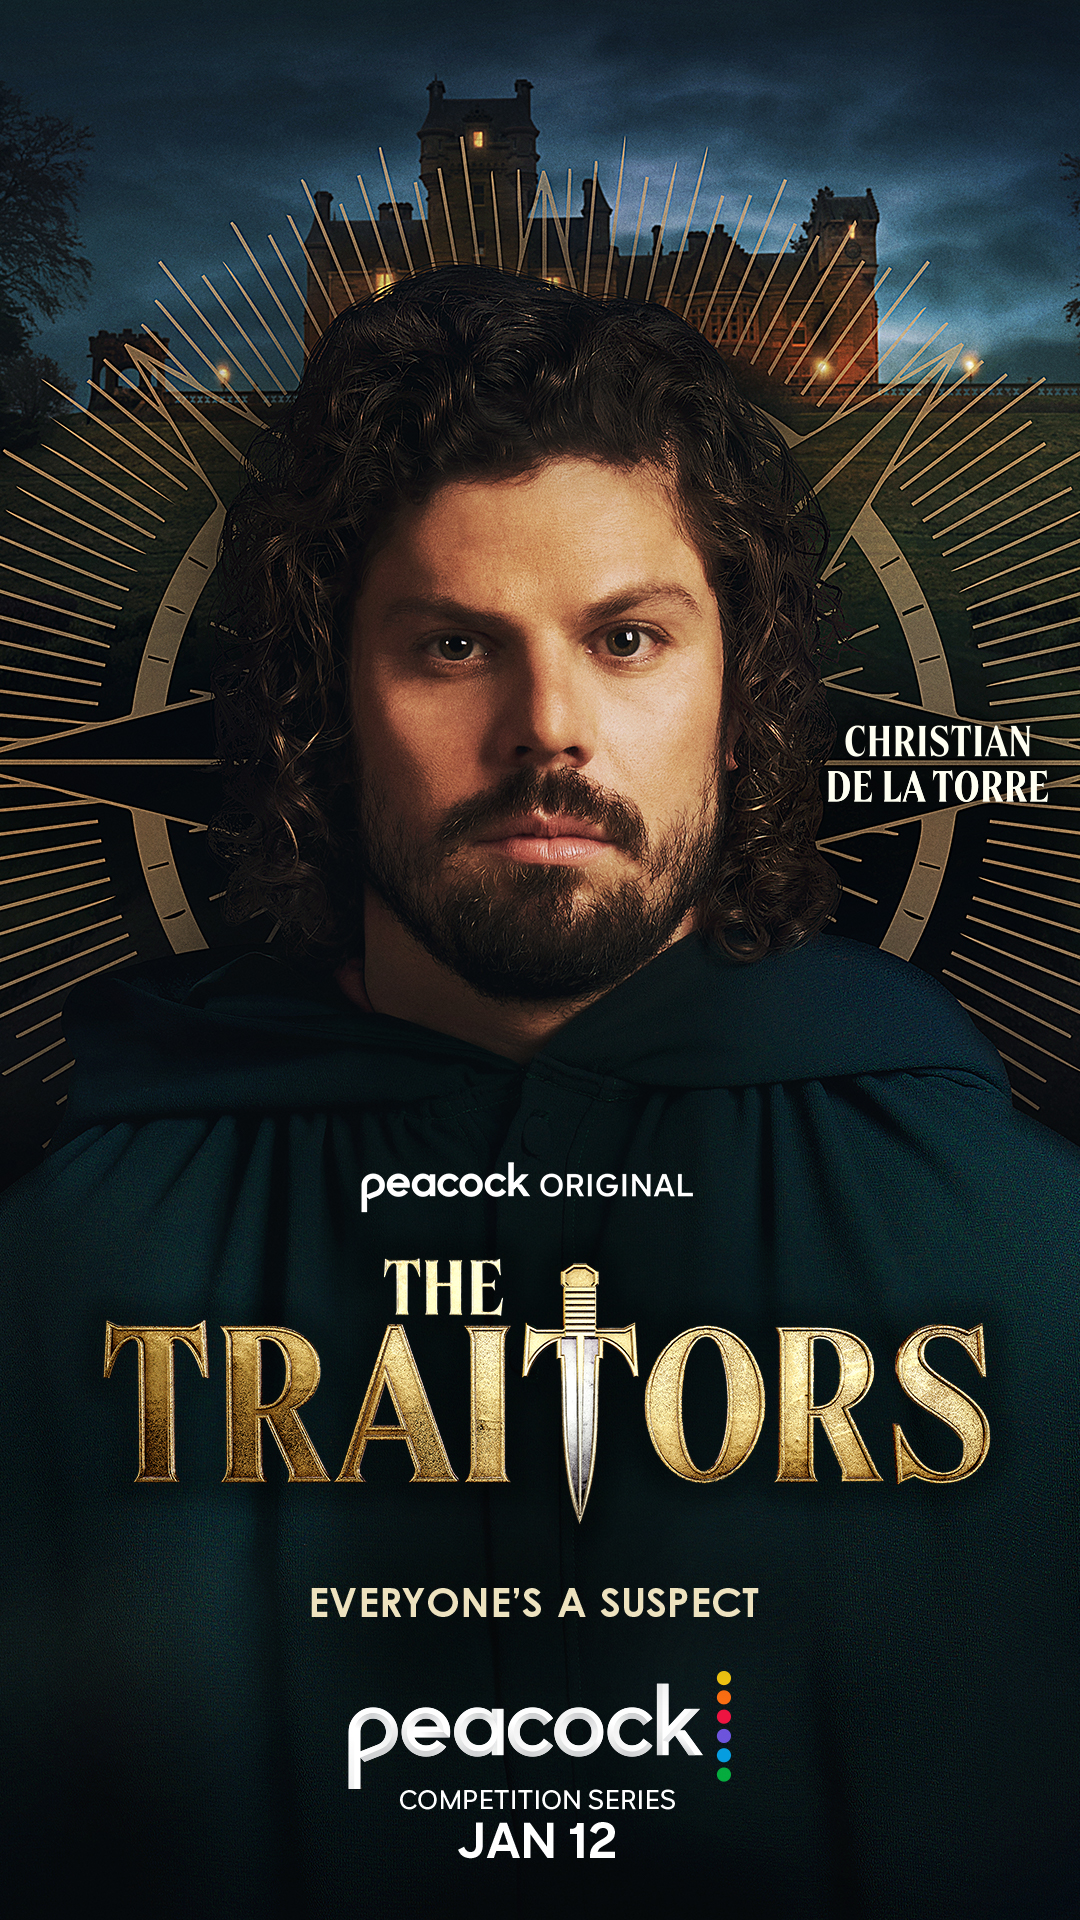 Christian De La Torre for 'The Traitors'